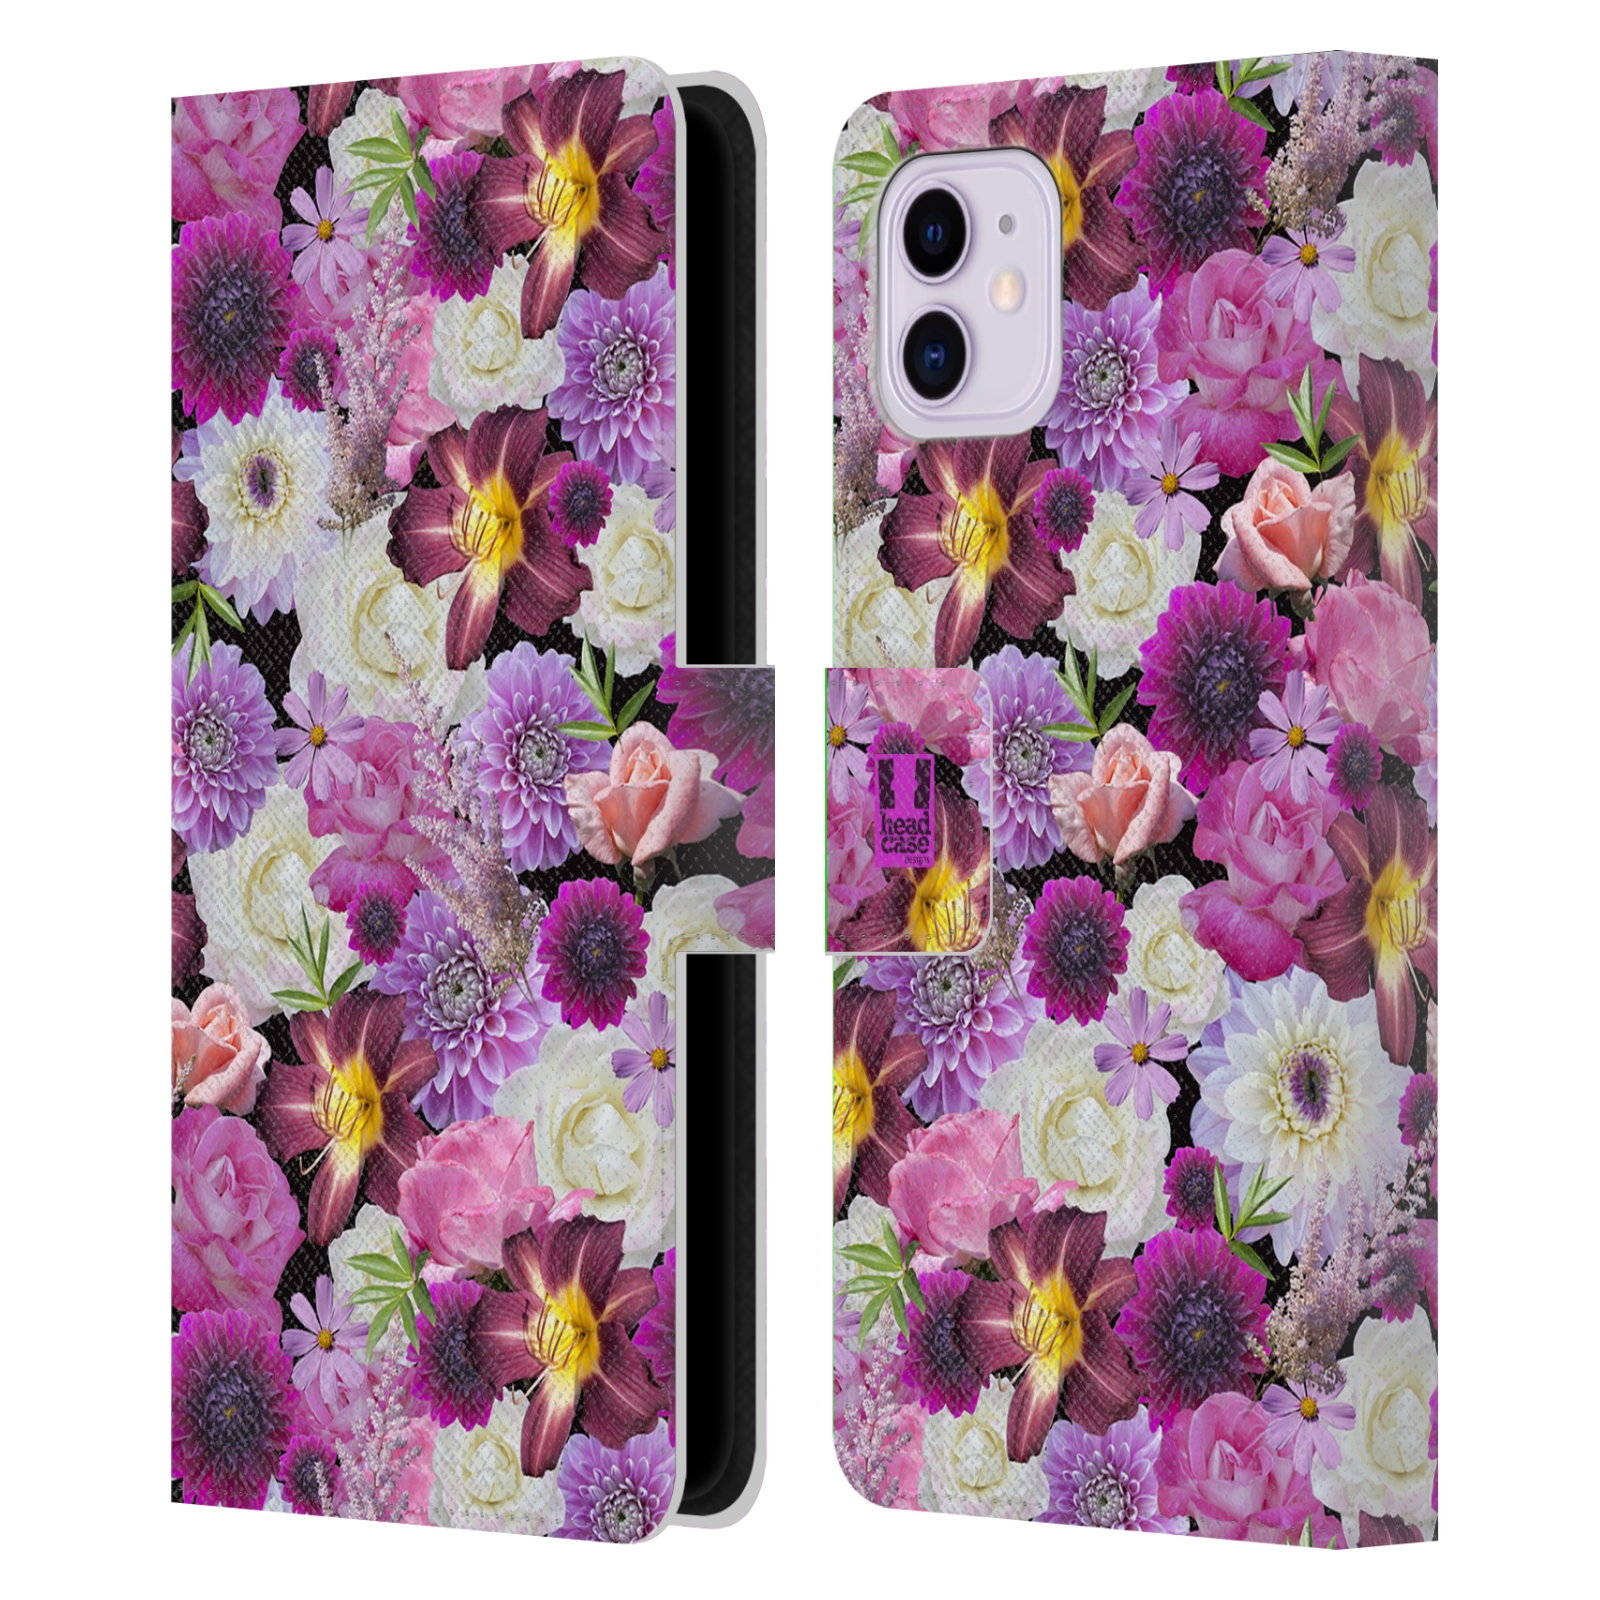 Pouzdro na mobil Apple Iphone 11 květy foto fialová a bílá